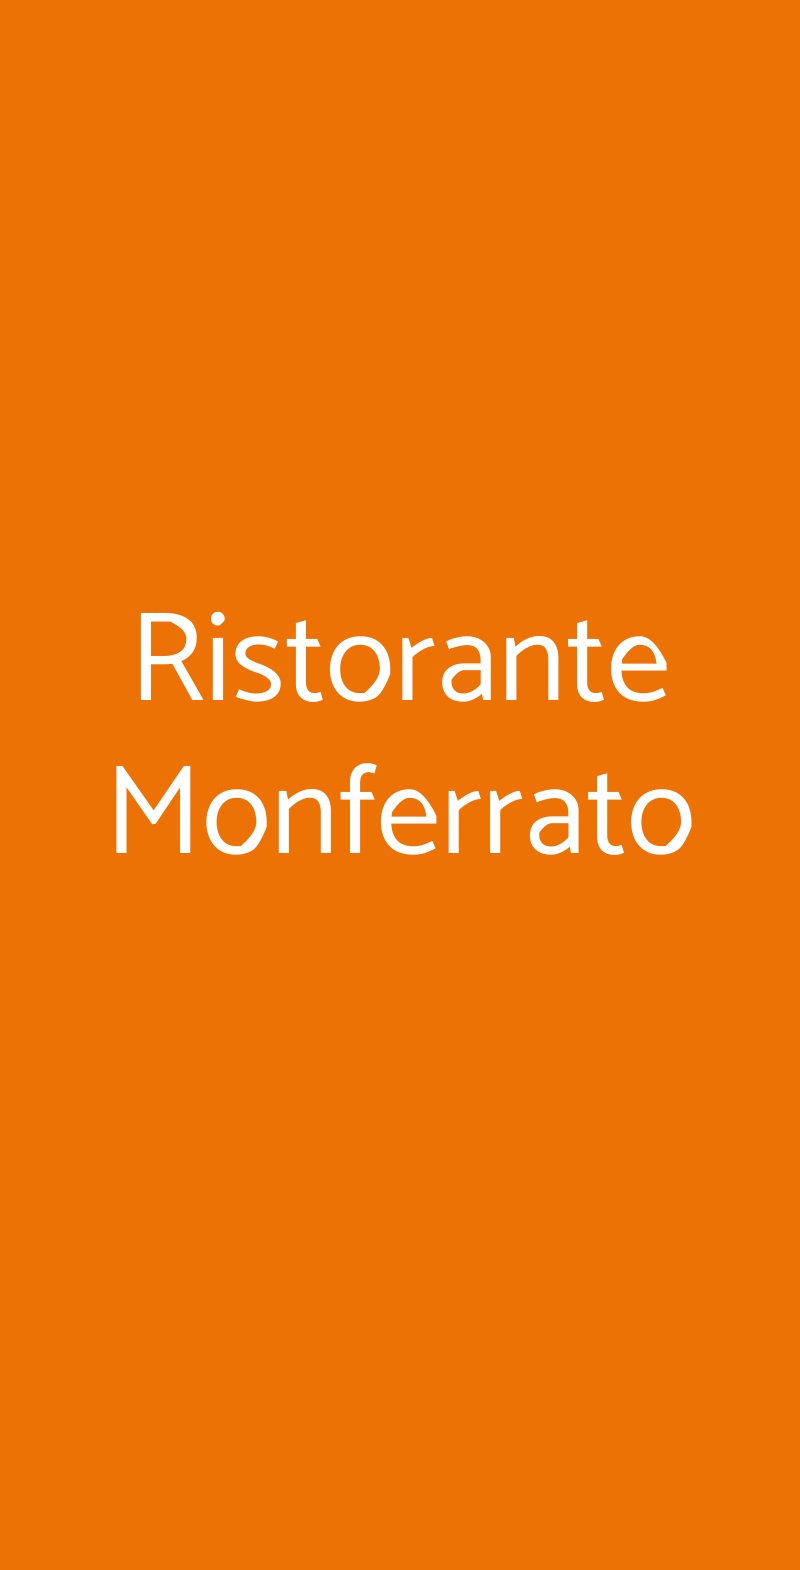 Ristorante Monferrato Torino menù 1 pagina